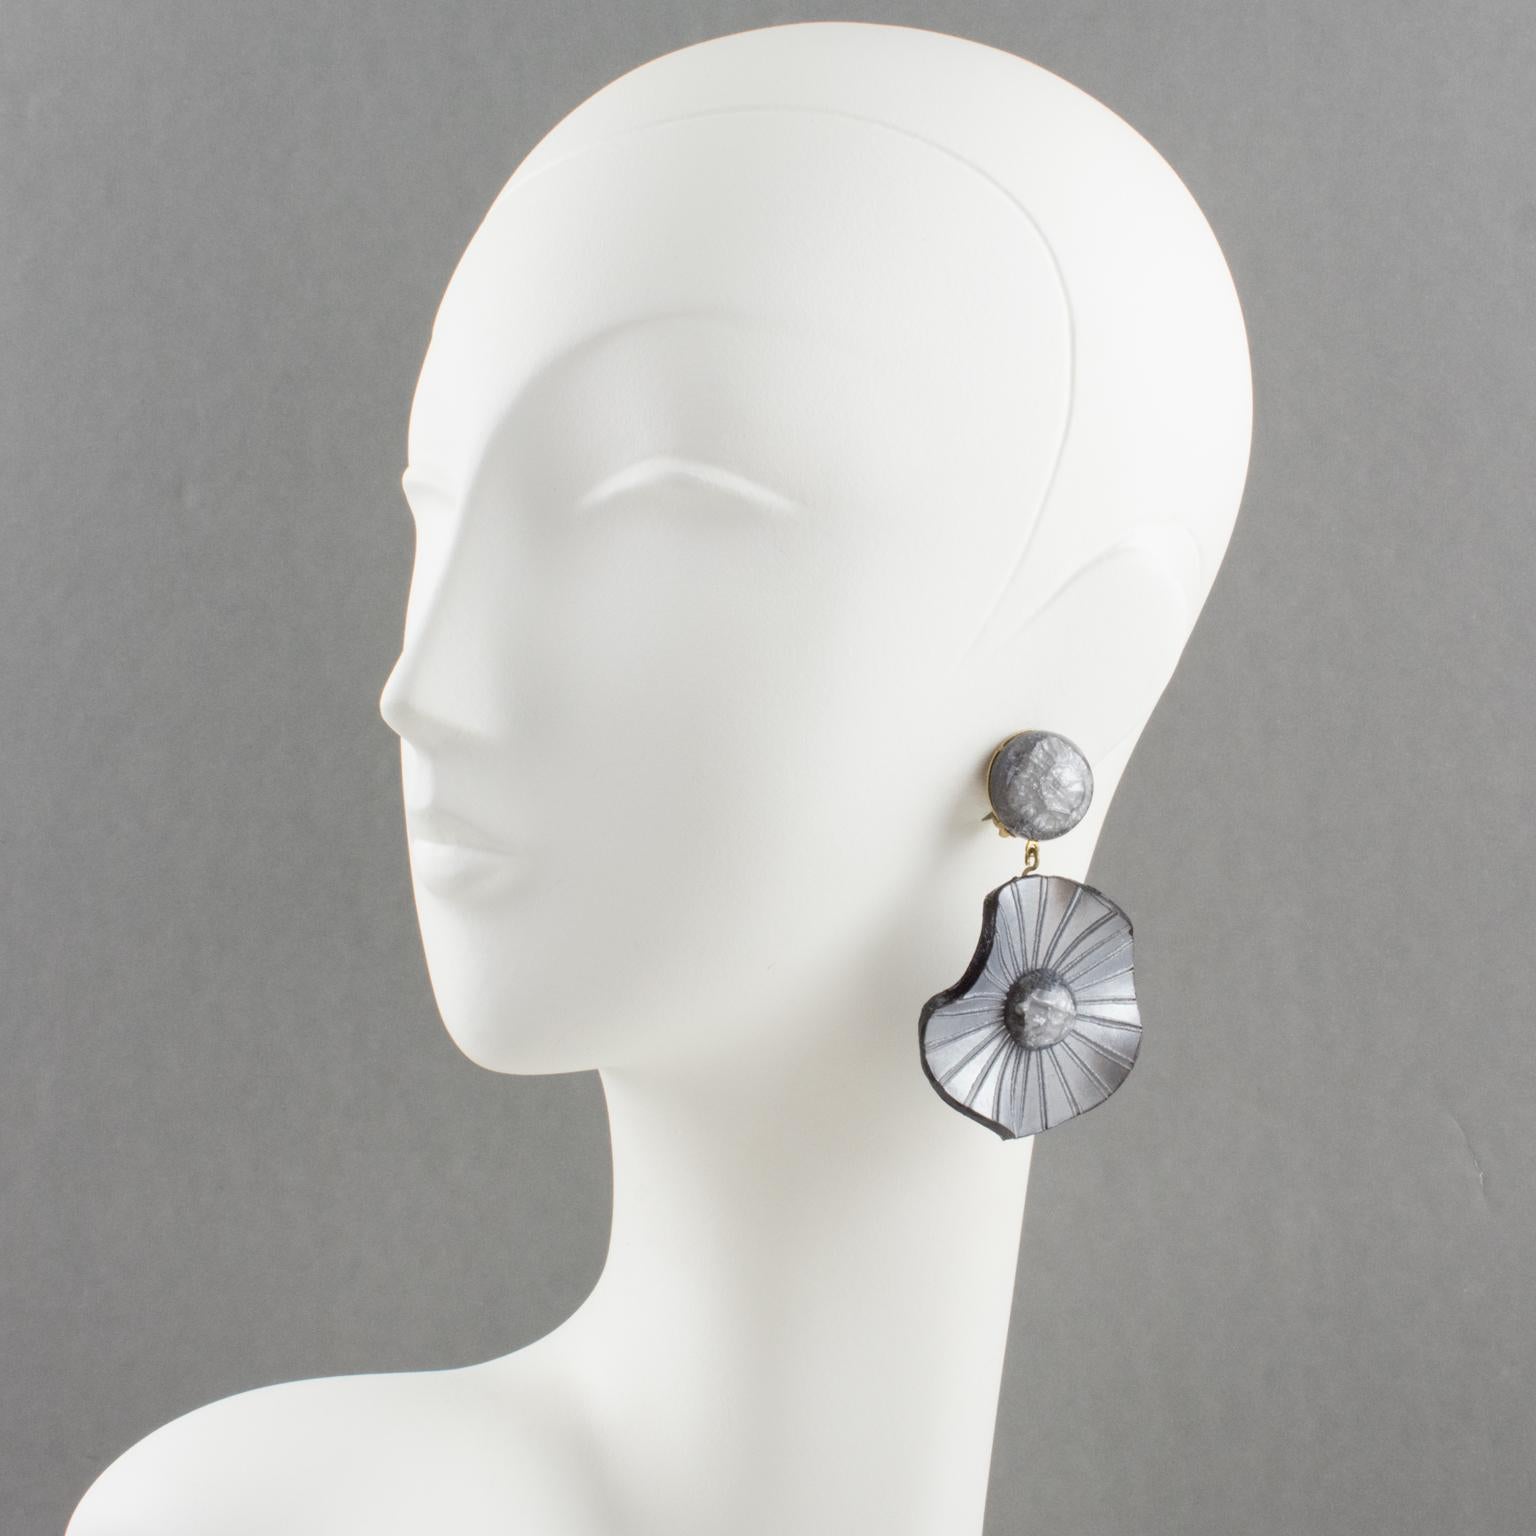 Diese exquisiten Ohrringe aus Harz der französischen Designerin Francoise Montague wurden von Cilea Paris entworfen. Sie haben eine einzigartige baumelnde Form, alle geschnitzten, strukturierten und gewellten floralen Scheiben in perlgrauer Farbe